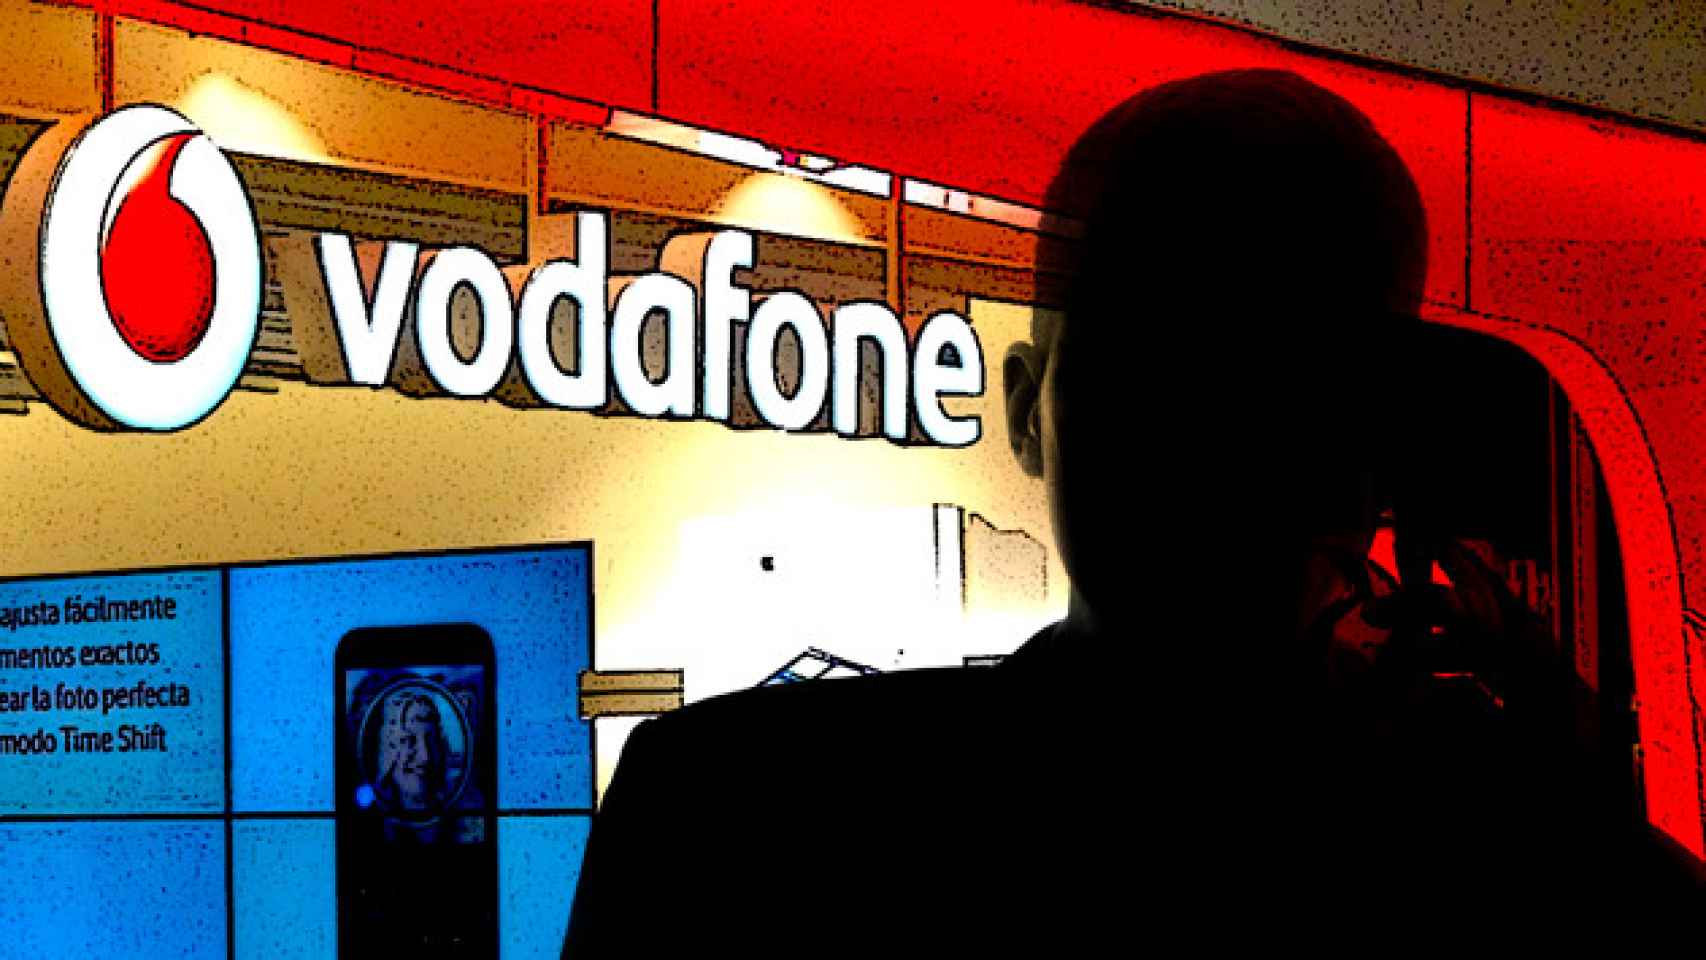 Un hombre habla por teléfono con la compañía telefónica Vodafone / FOTOMONTAJE DE CG